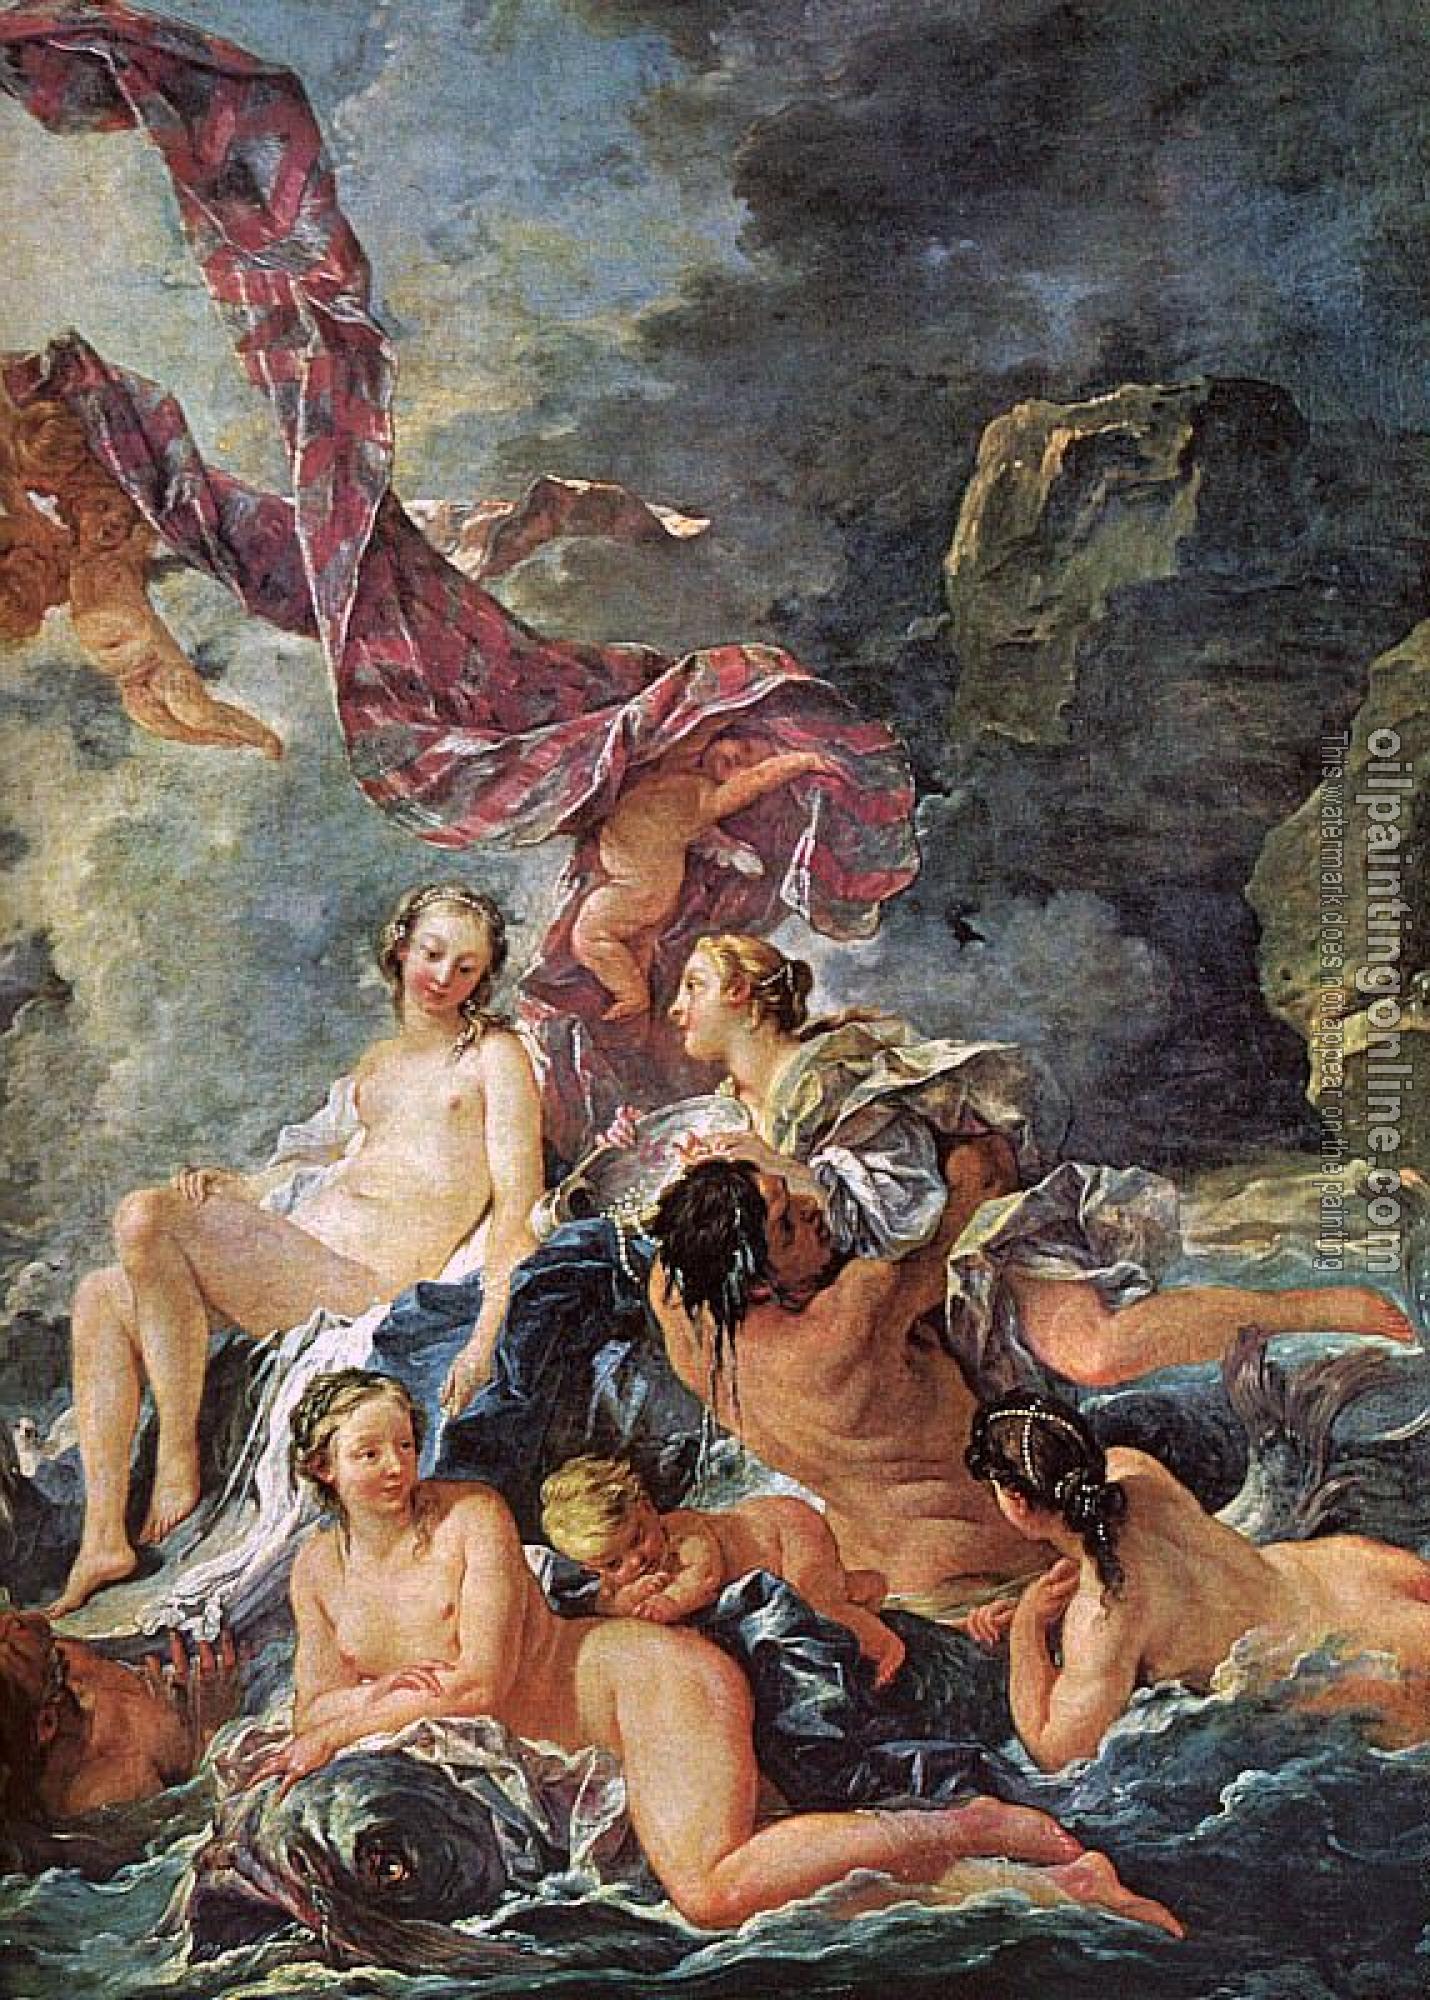 Boucher, Francois - The Triumph of Venus, detail